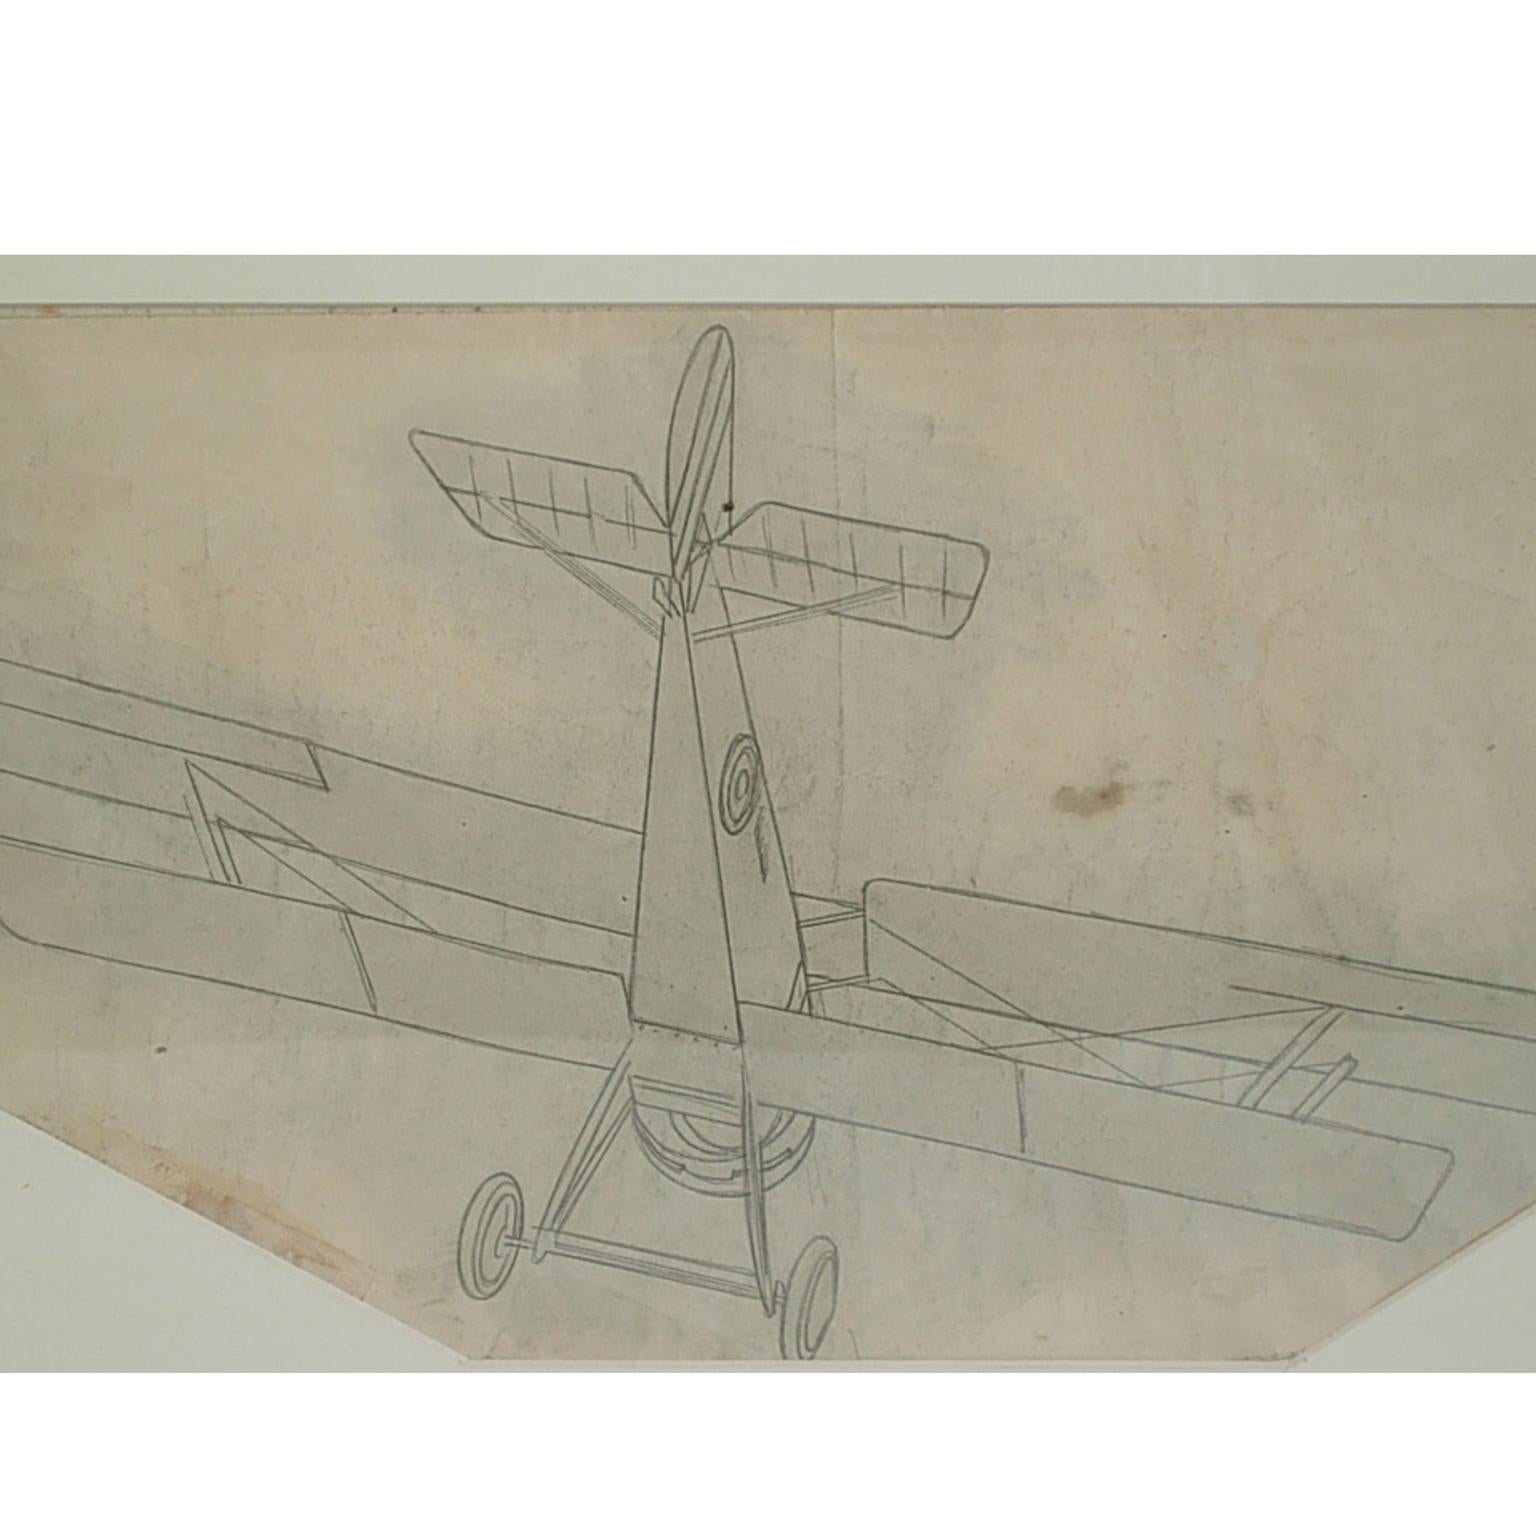 Dessin au crayon représentant un chasseur biplan monoplace Hanriot HD 1, par Riccardo Cavigioli. Dimensions avec le cadre cm 49 x 31 - inch19.3 x 11.8.
Riccardo Cavigioli est né à Milan le 10 novembre 1895 et est décédé à Gavirate (VA) le 27 mai